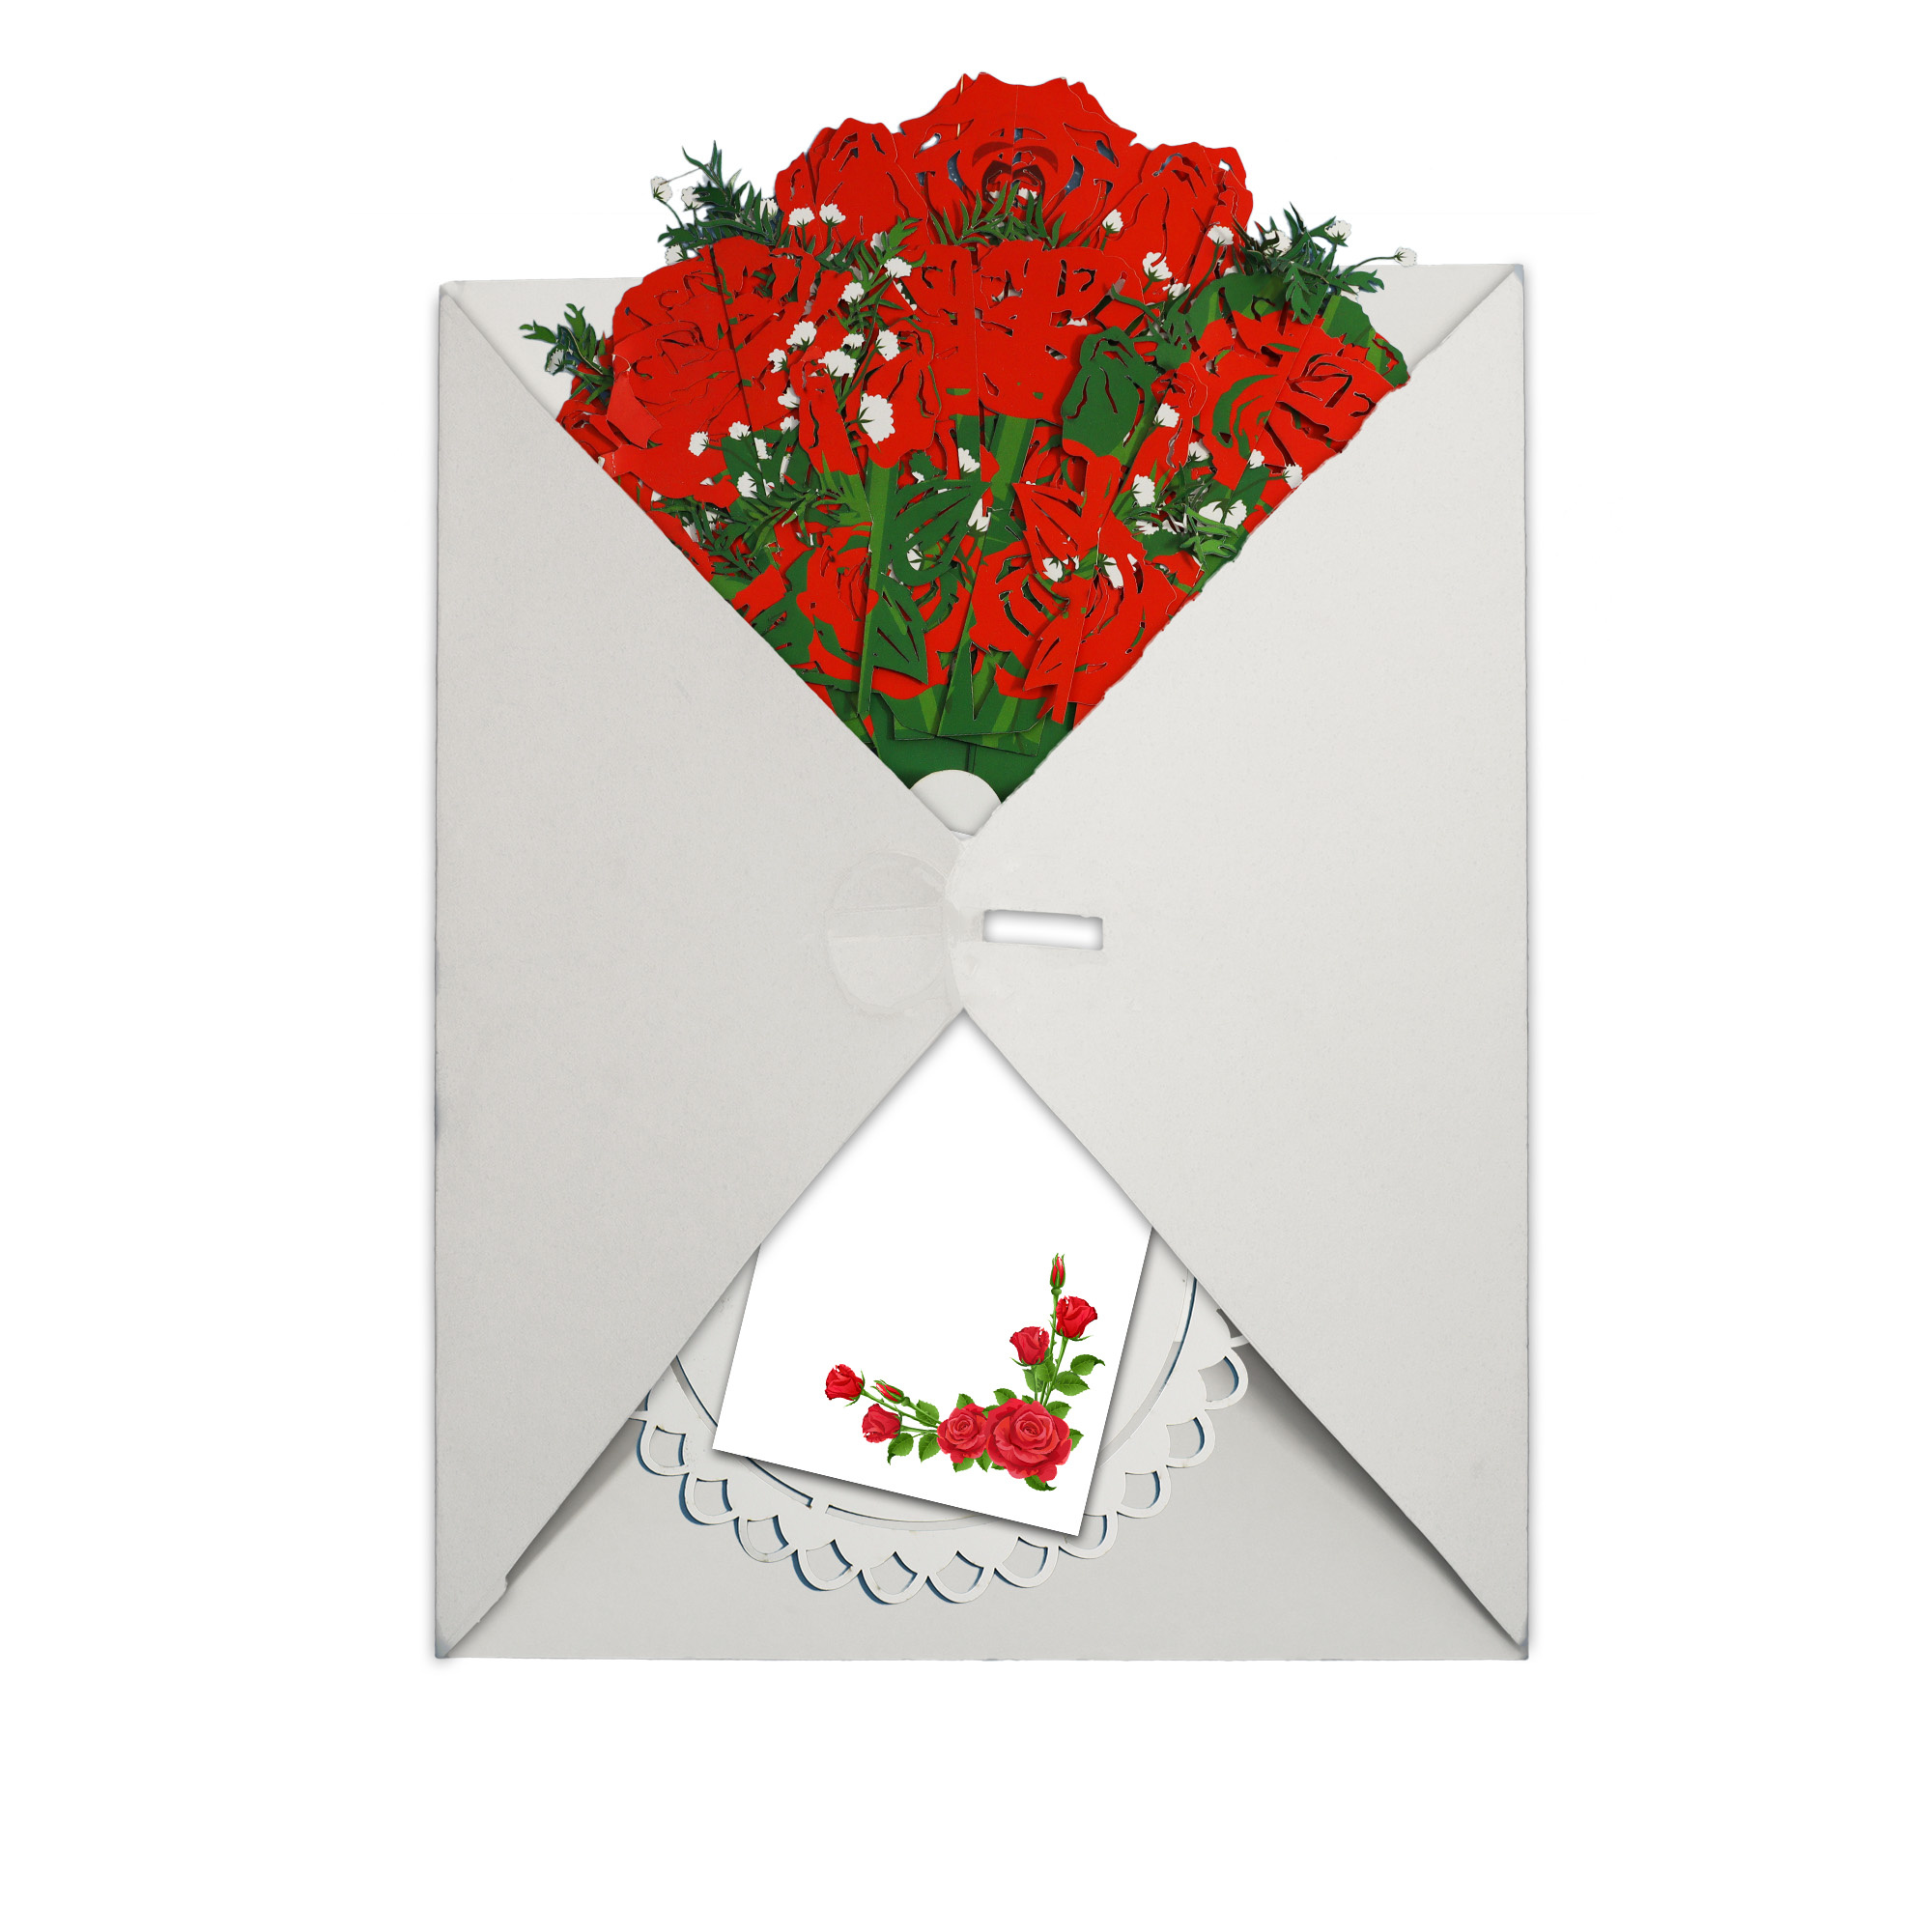 LINPOPUP LIN Pop Up Blumenstrauß, Handgemachter Blumen aus Papier inkl. Vase u. Unterteller, als Geschenk zum Geburtstag, Muttertag, Gute Besserung, Danke, Papierblumenstrauß -Rosenstrauß, LIN17900, LINPopUp®, N800